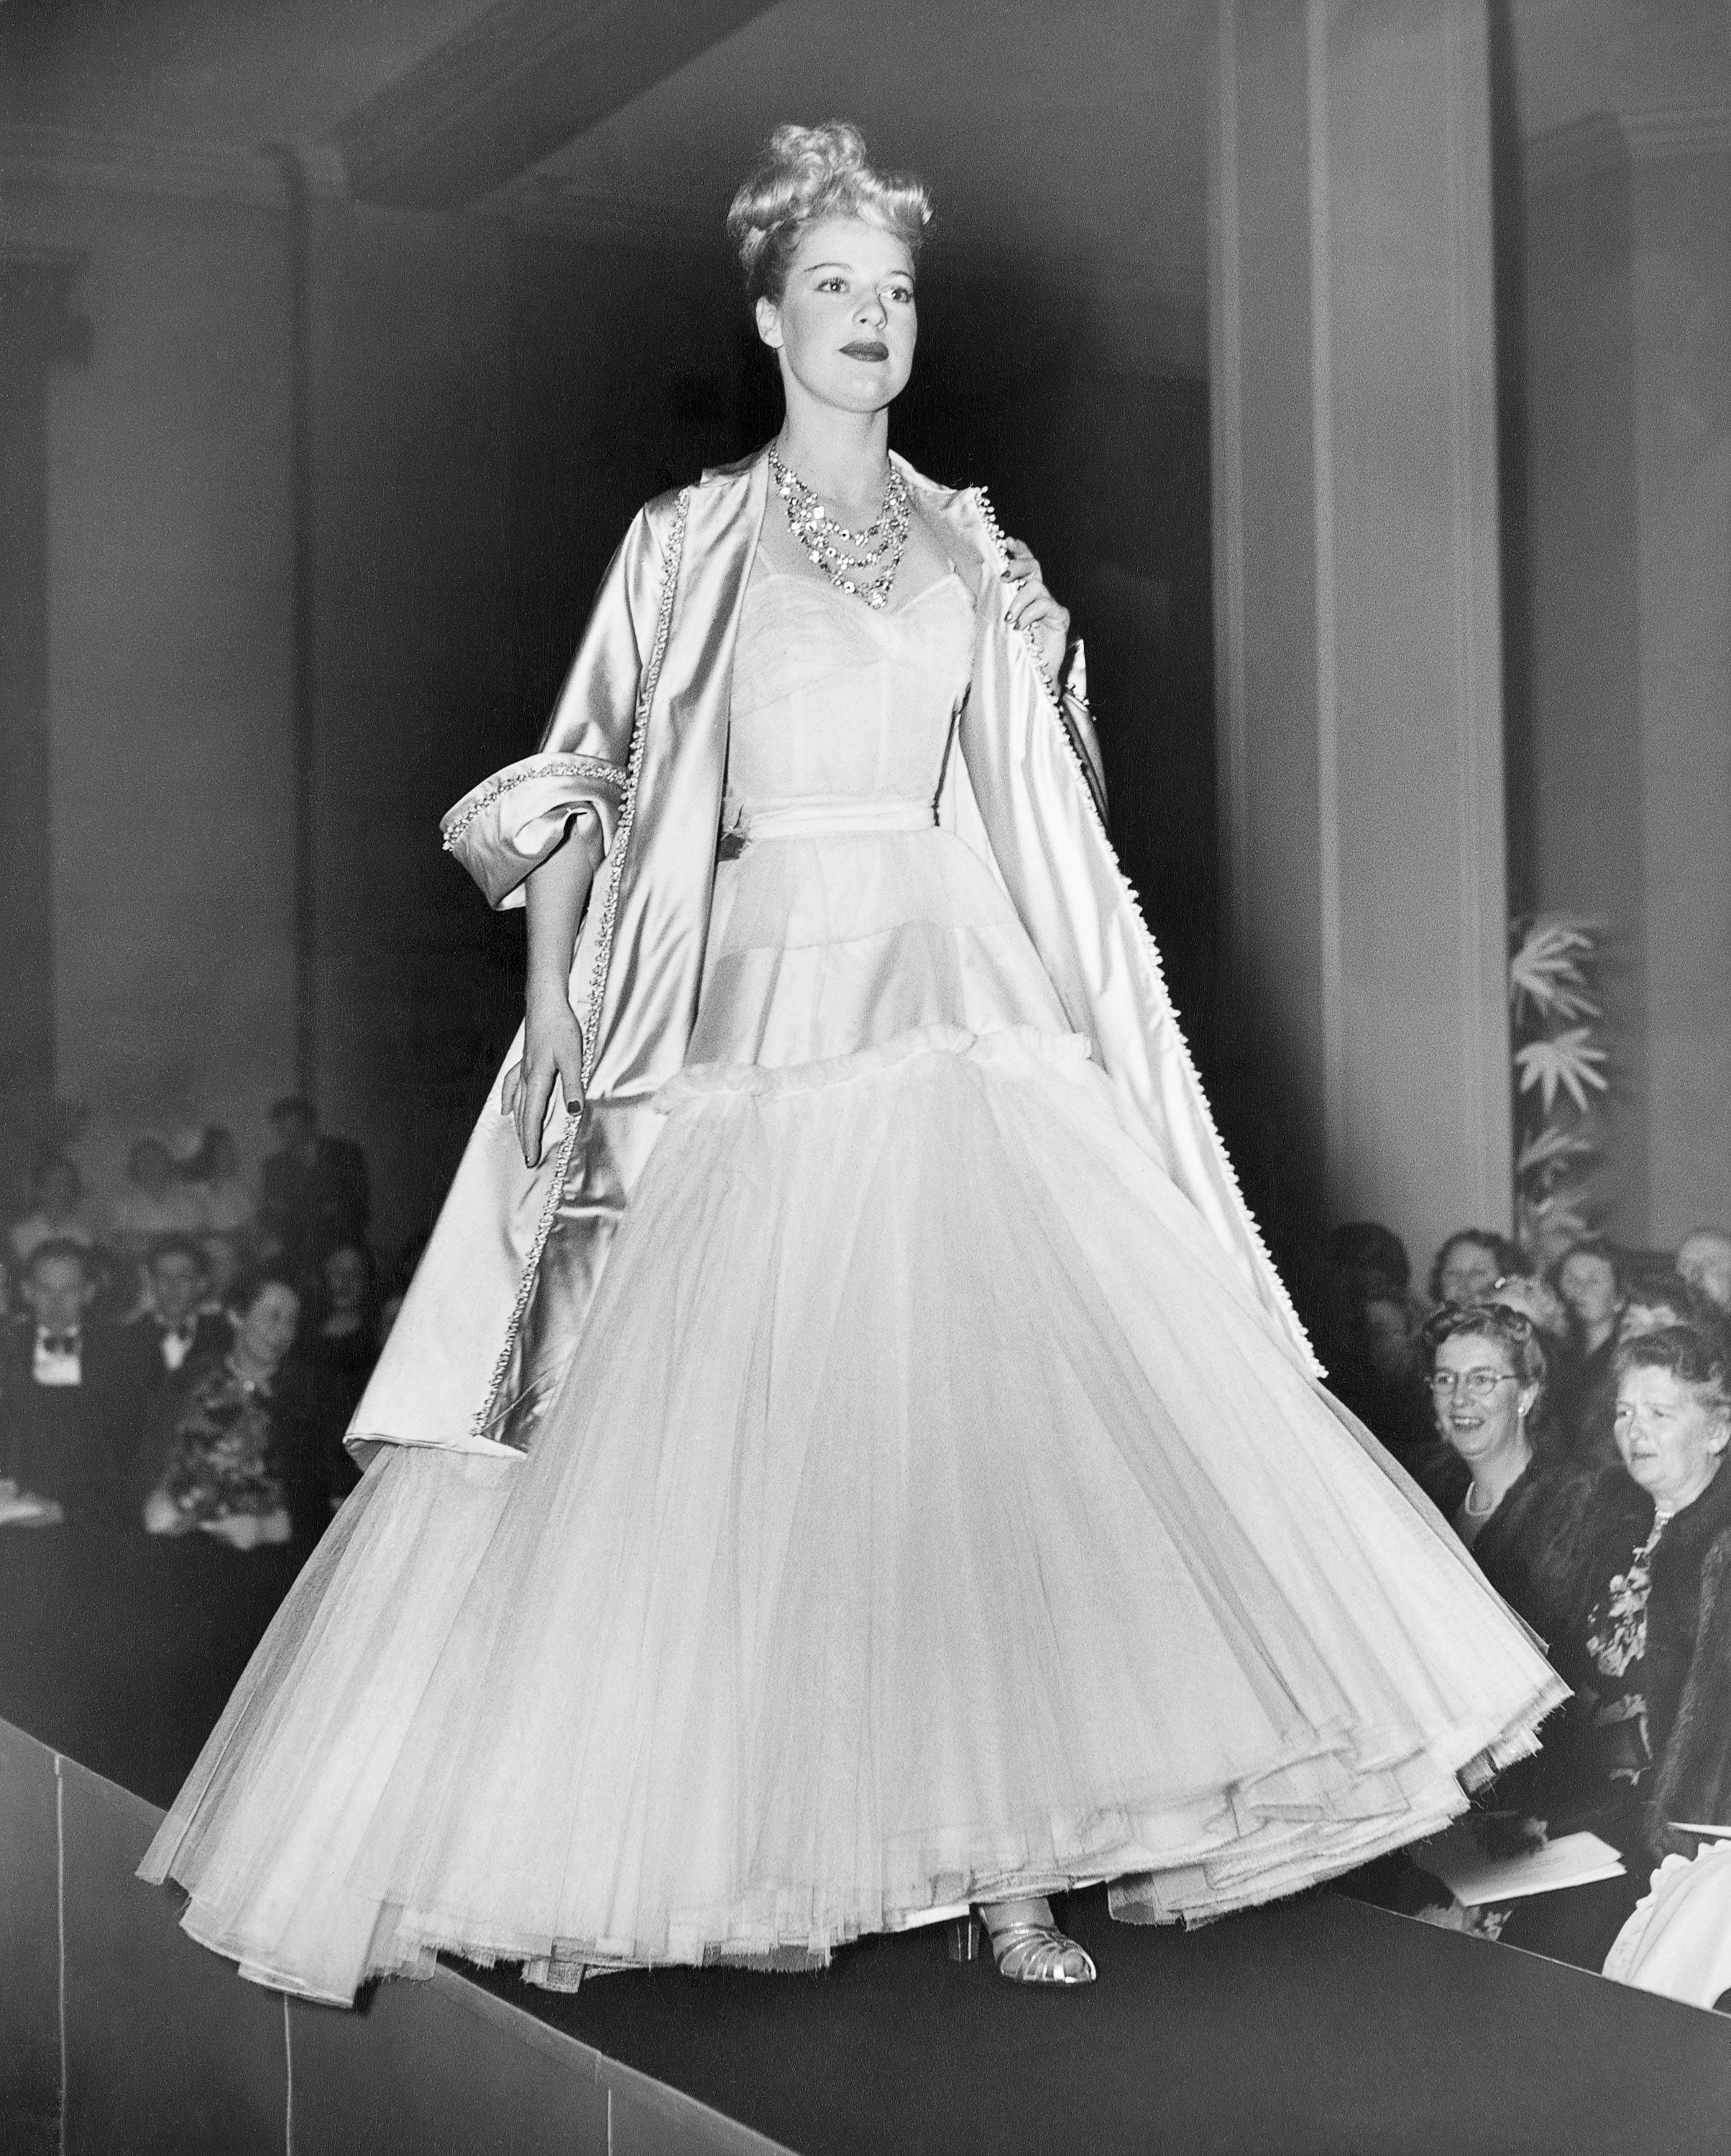 How Christian Dior revolutionized fashion 70 years ago – DW – 02/10/2017